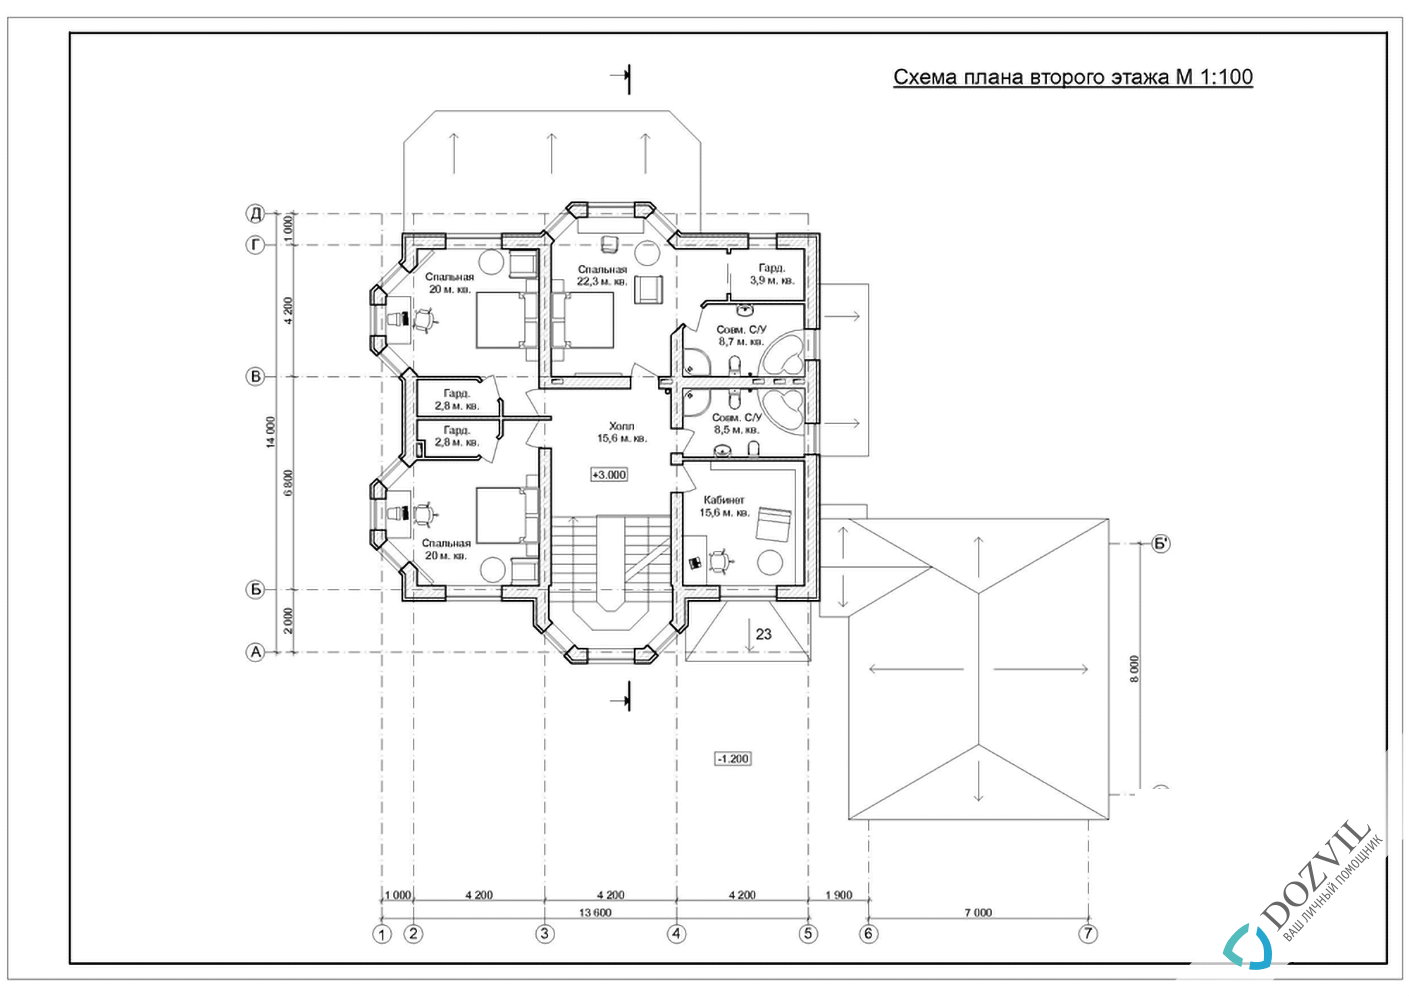 Разрешение на строительство дома > Дома с общей площадью до 500 квадратных метров, которые только планируют строить или построили самовольно после 09 апреля 2015 года. > 2 этап - Разработка эскиза намерений строительства.